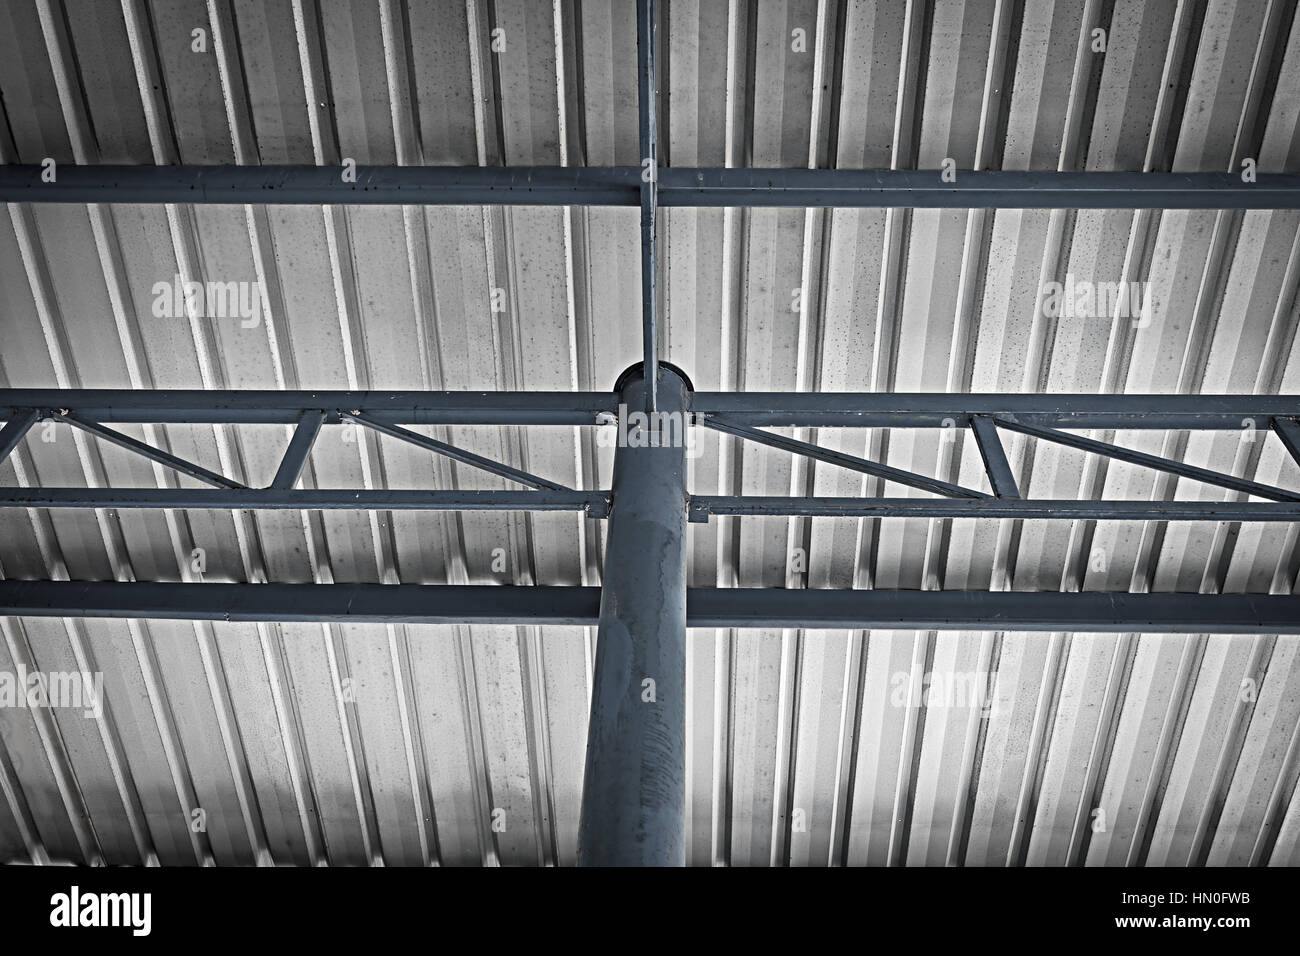 Altes Dach und Rost Stahlbinder für Hintergrundtextur/Prozessfarbe  Stockfotografie - Alamy